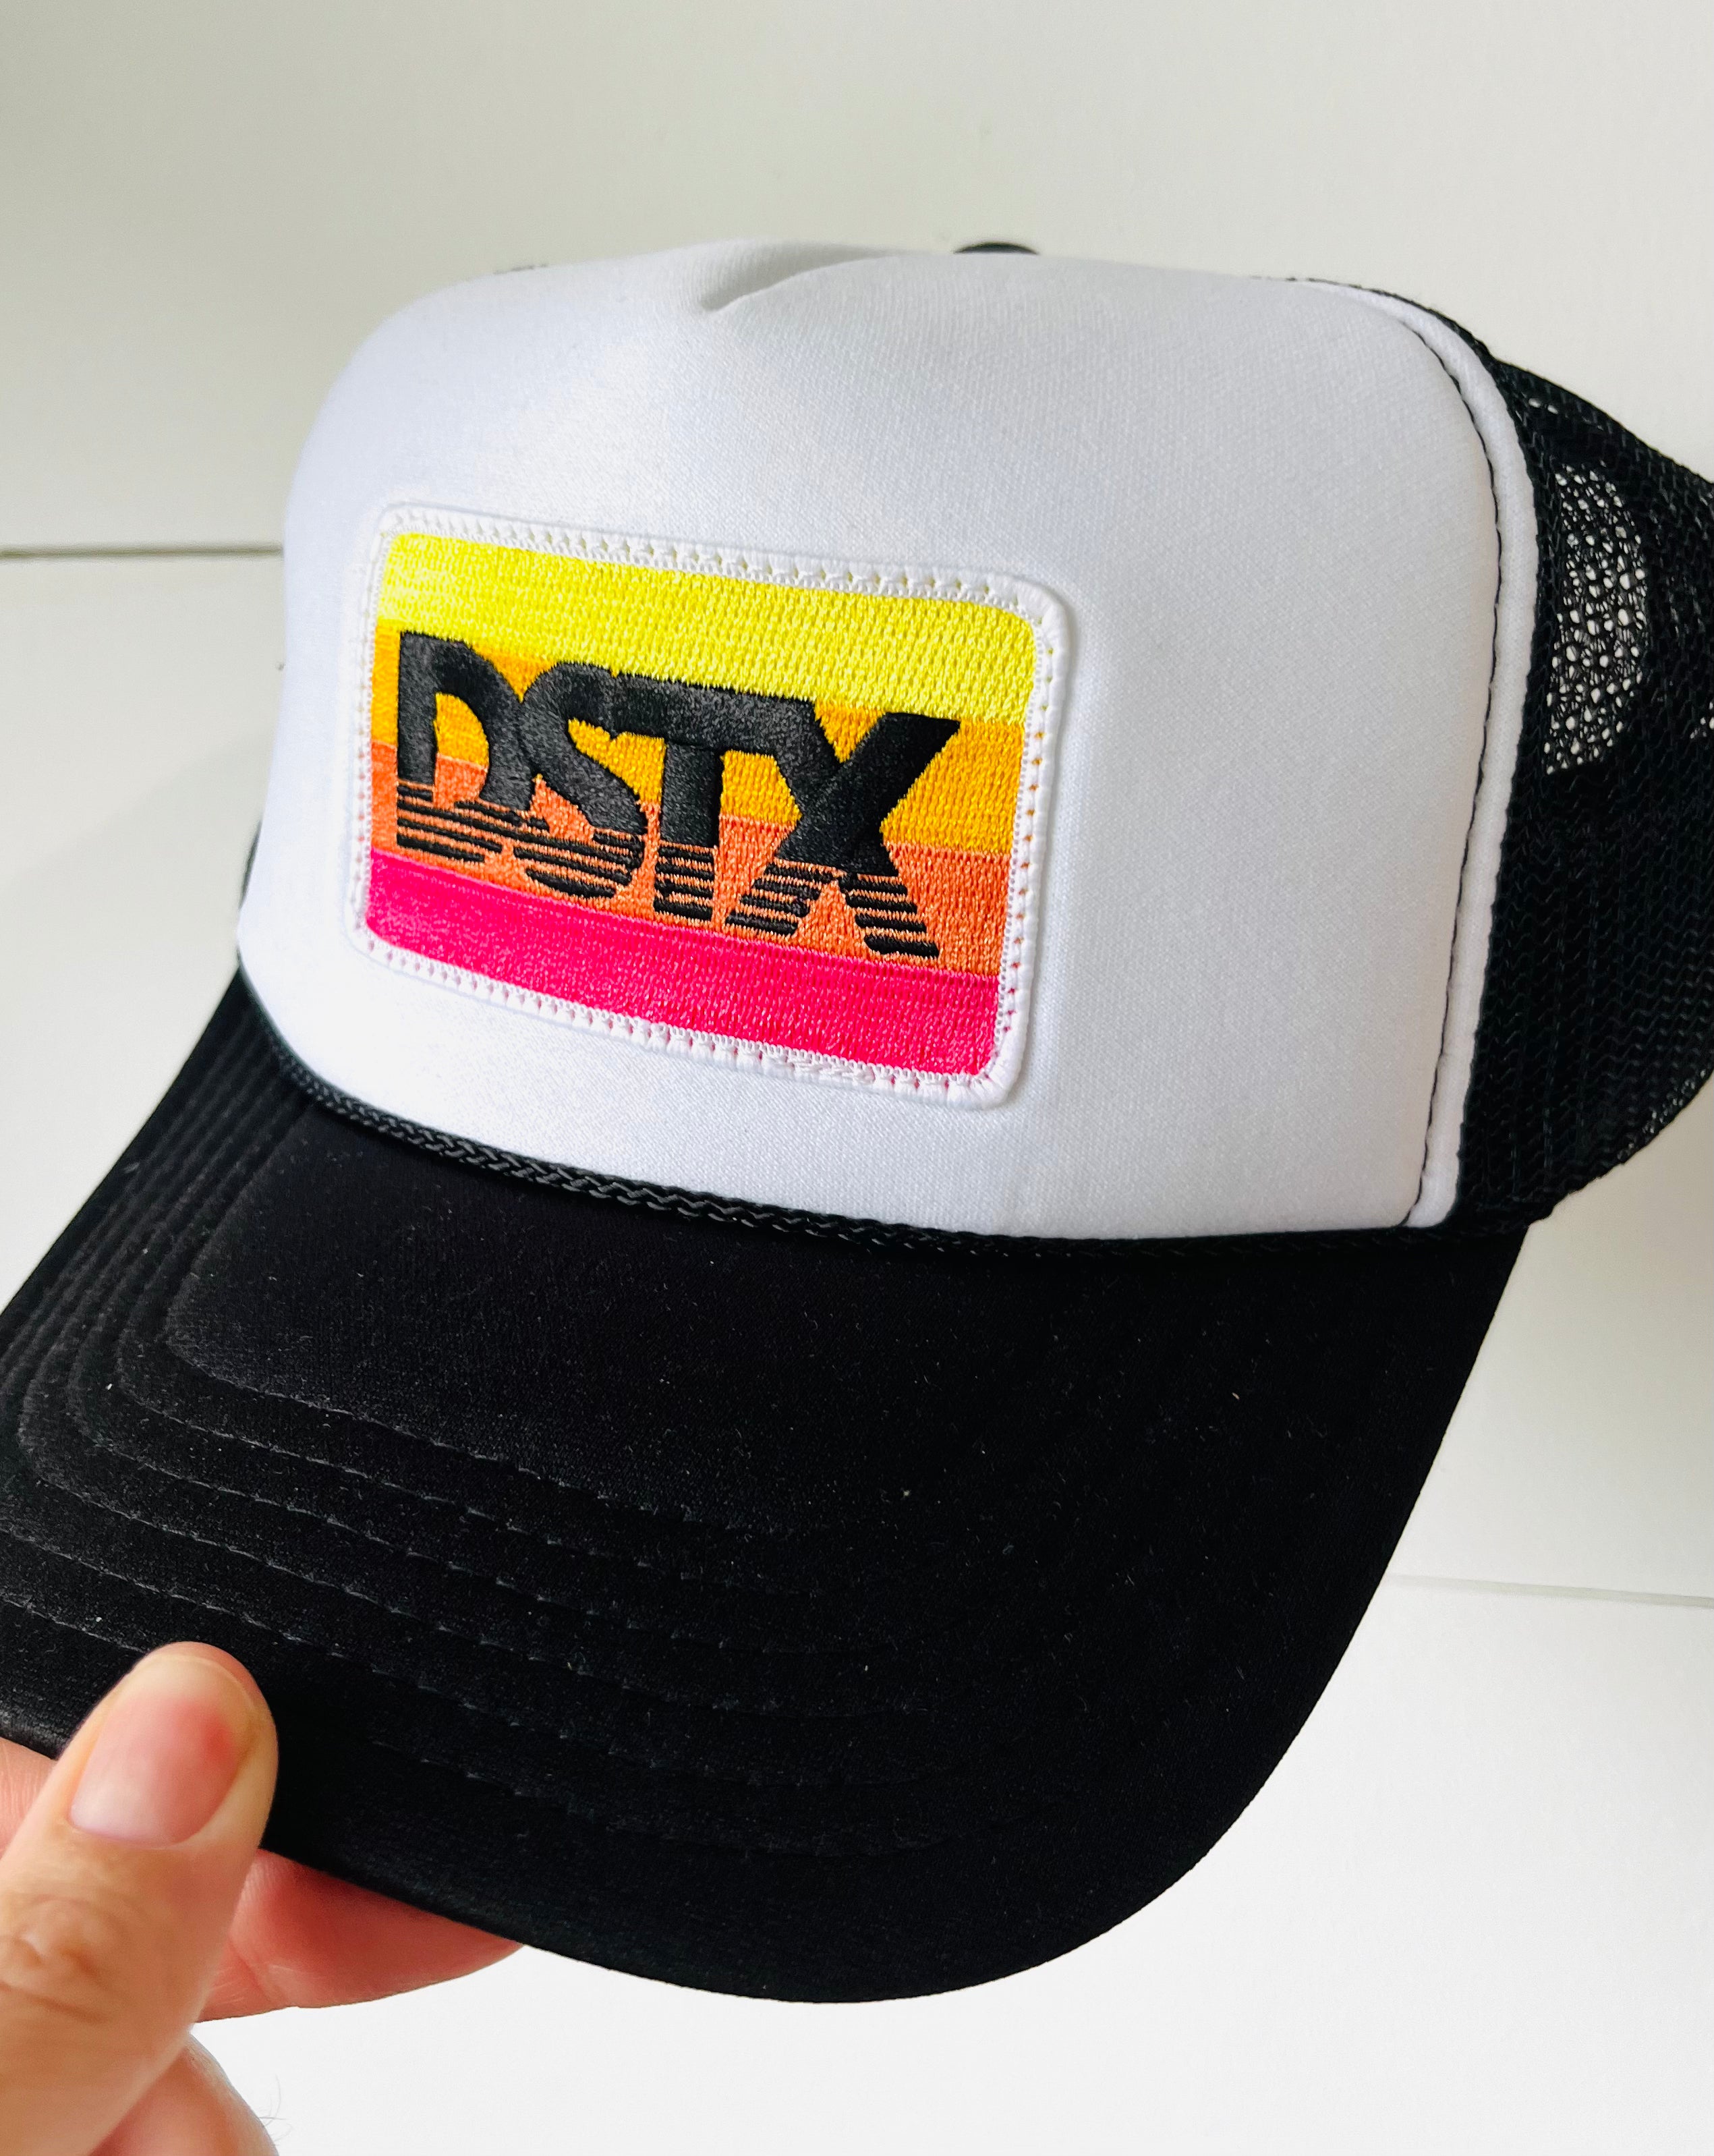 DSTX Black & White Trucker